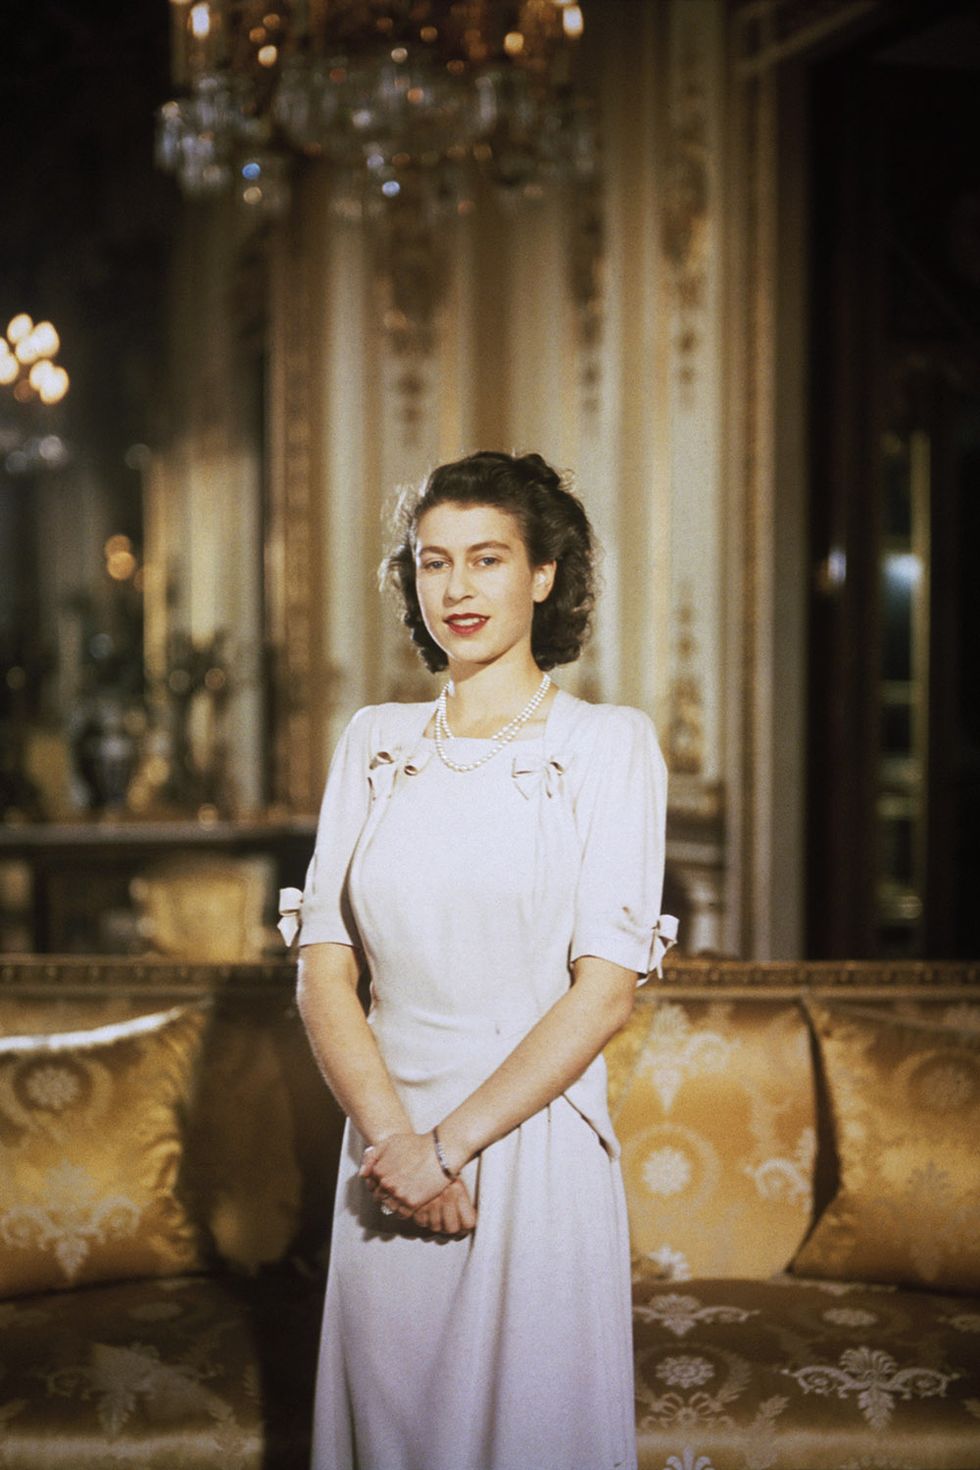 Queen Elizabeth II Through the Years - Photos of Queen Elizabeth II